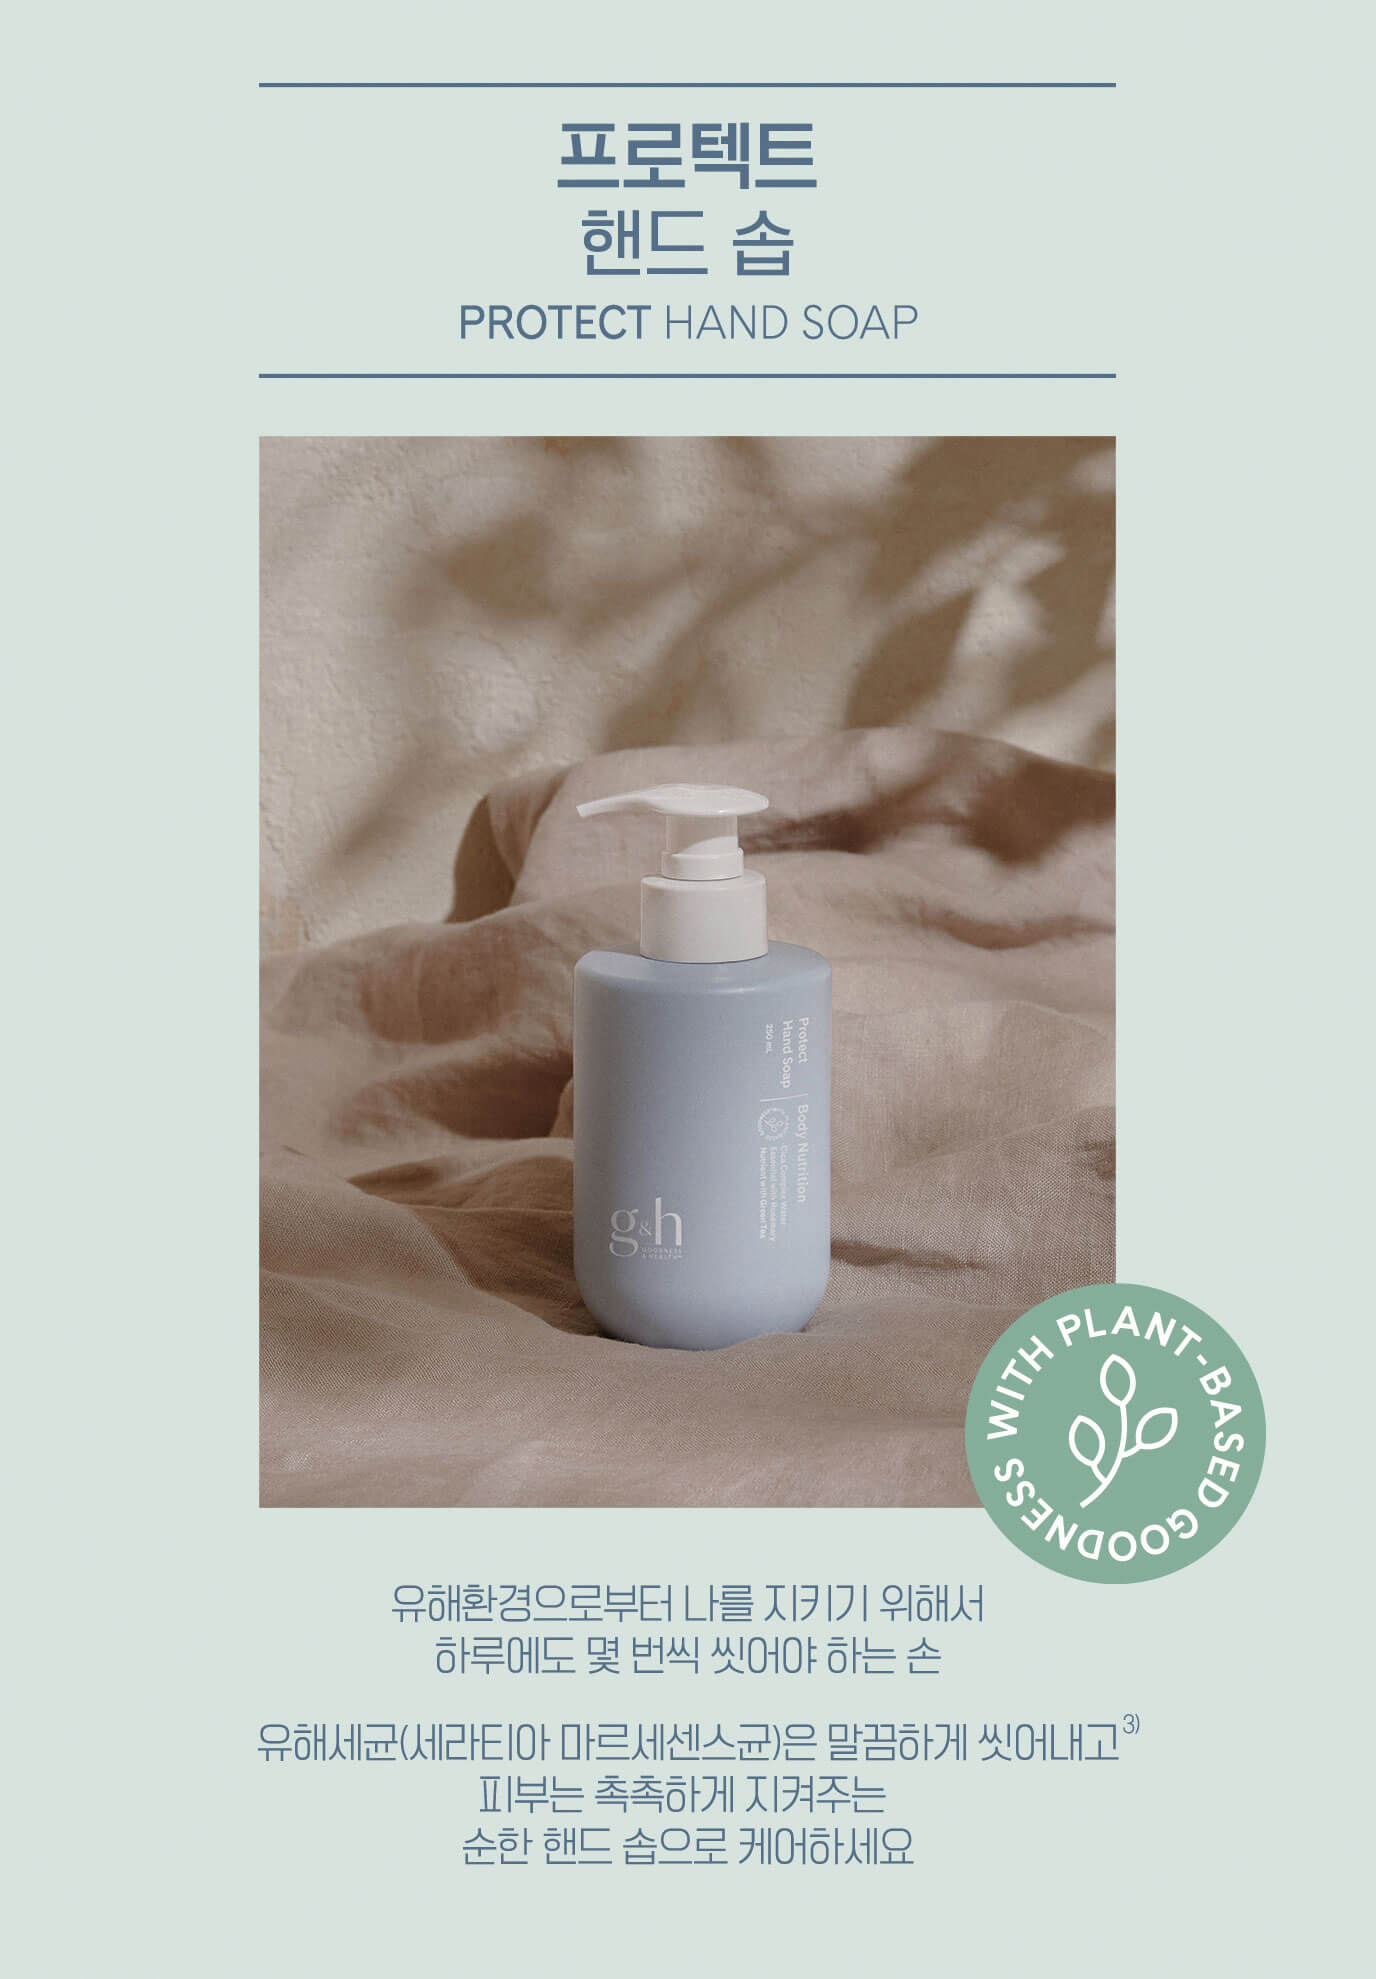 프로텍트 핸드 솝 PROTECT HAND SOAP - 유해환경으로부터 나를 지키기 위해서 하루에도 몇 번씩 씻어햐 나는 손 유해세균(세라티아 마르세센스균)은 말끔하게 씻어내고 피부는 촉촉하게 지켜주는 순한 핸드 솝으로 케어하세요